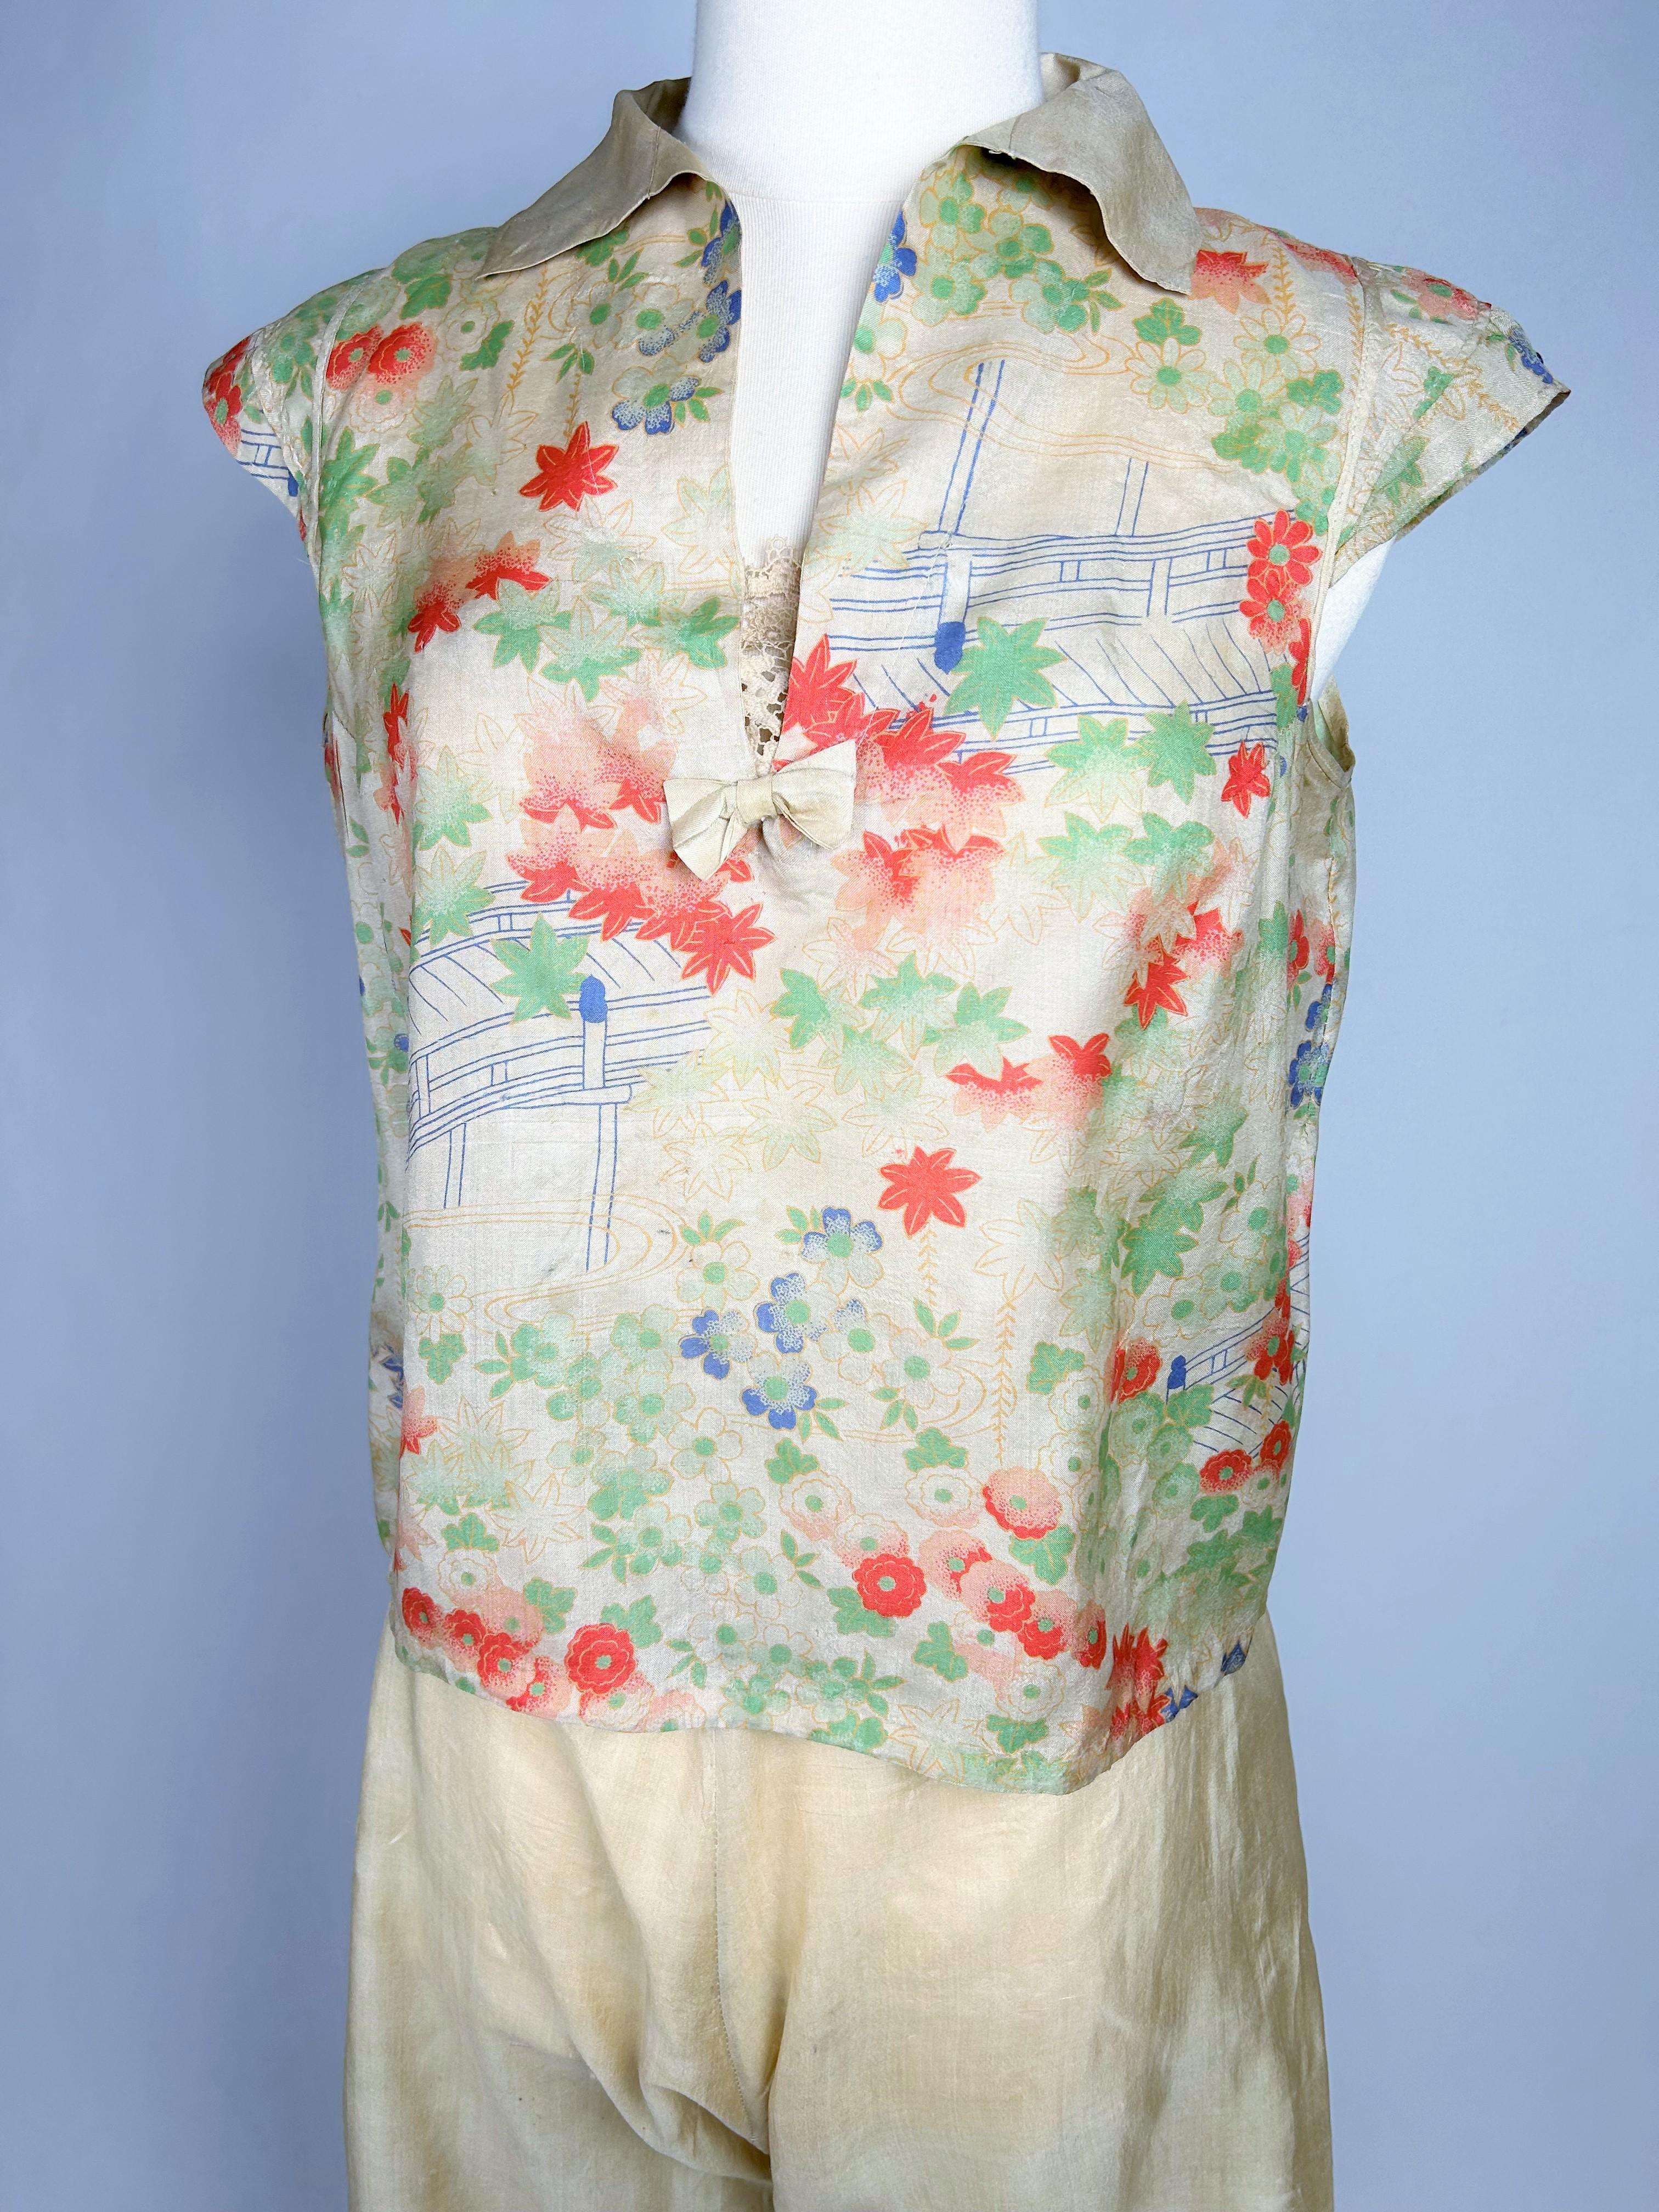 Vers 1930

France

Magnifique pyjama du soir, deux pièces pantalon et corsage en pongé de soie imprimé datant des années 1930. Magnifique imprimé avec décoration florale japonaise dans des couleurs douces. Pantalon taille haute avec pattes